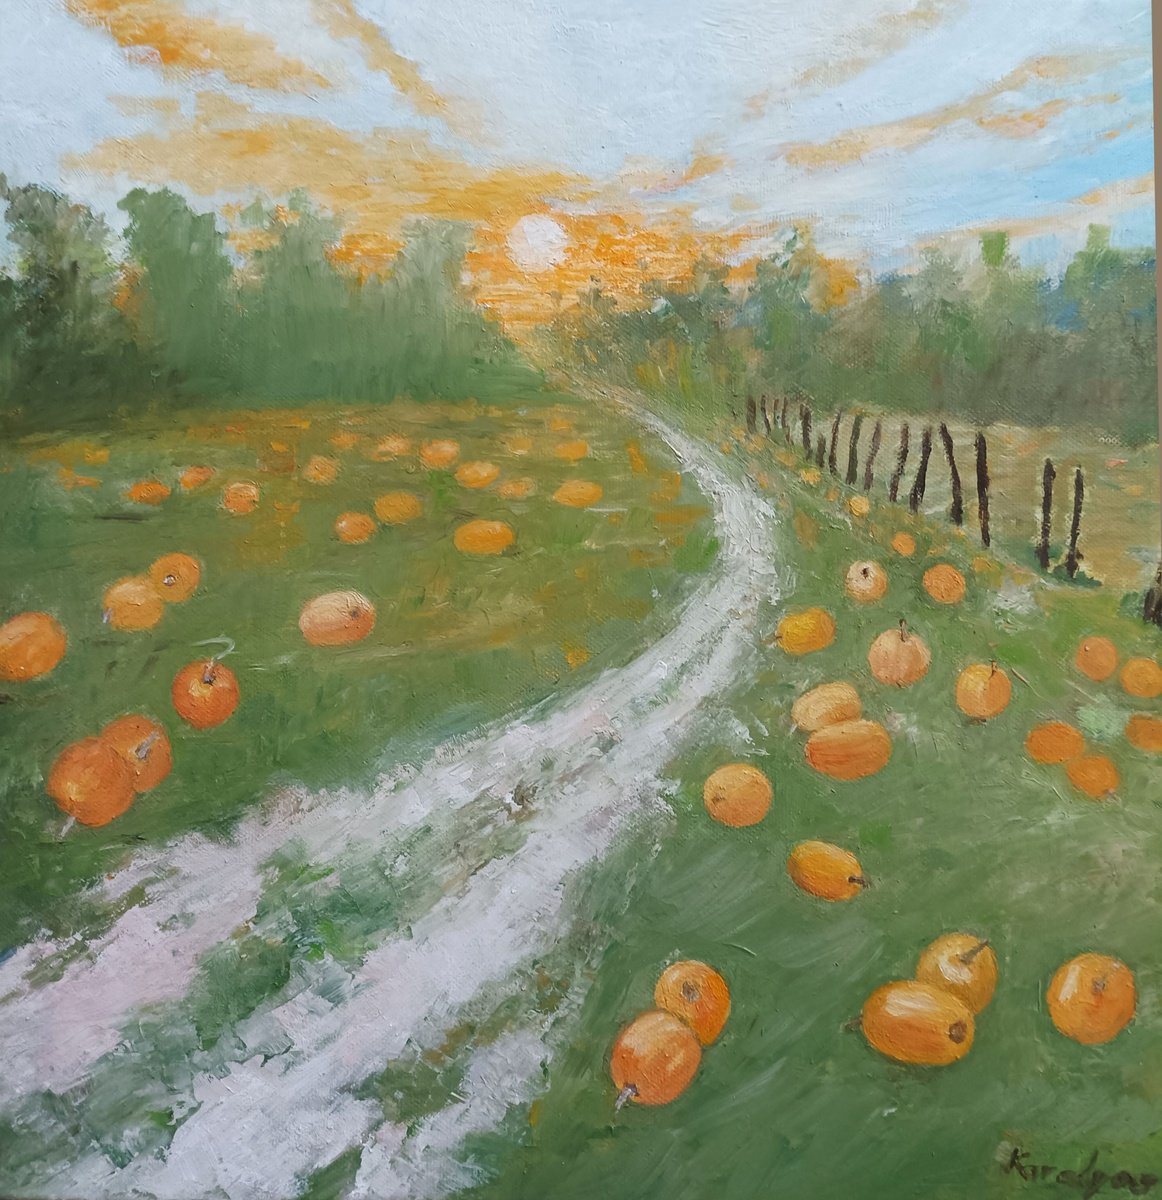 Path through the pumpkin field by Maria Karalyos